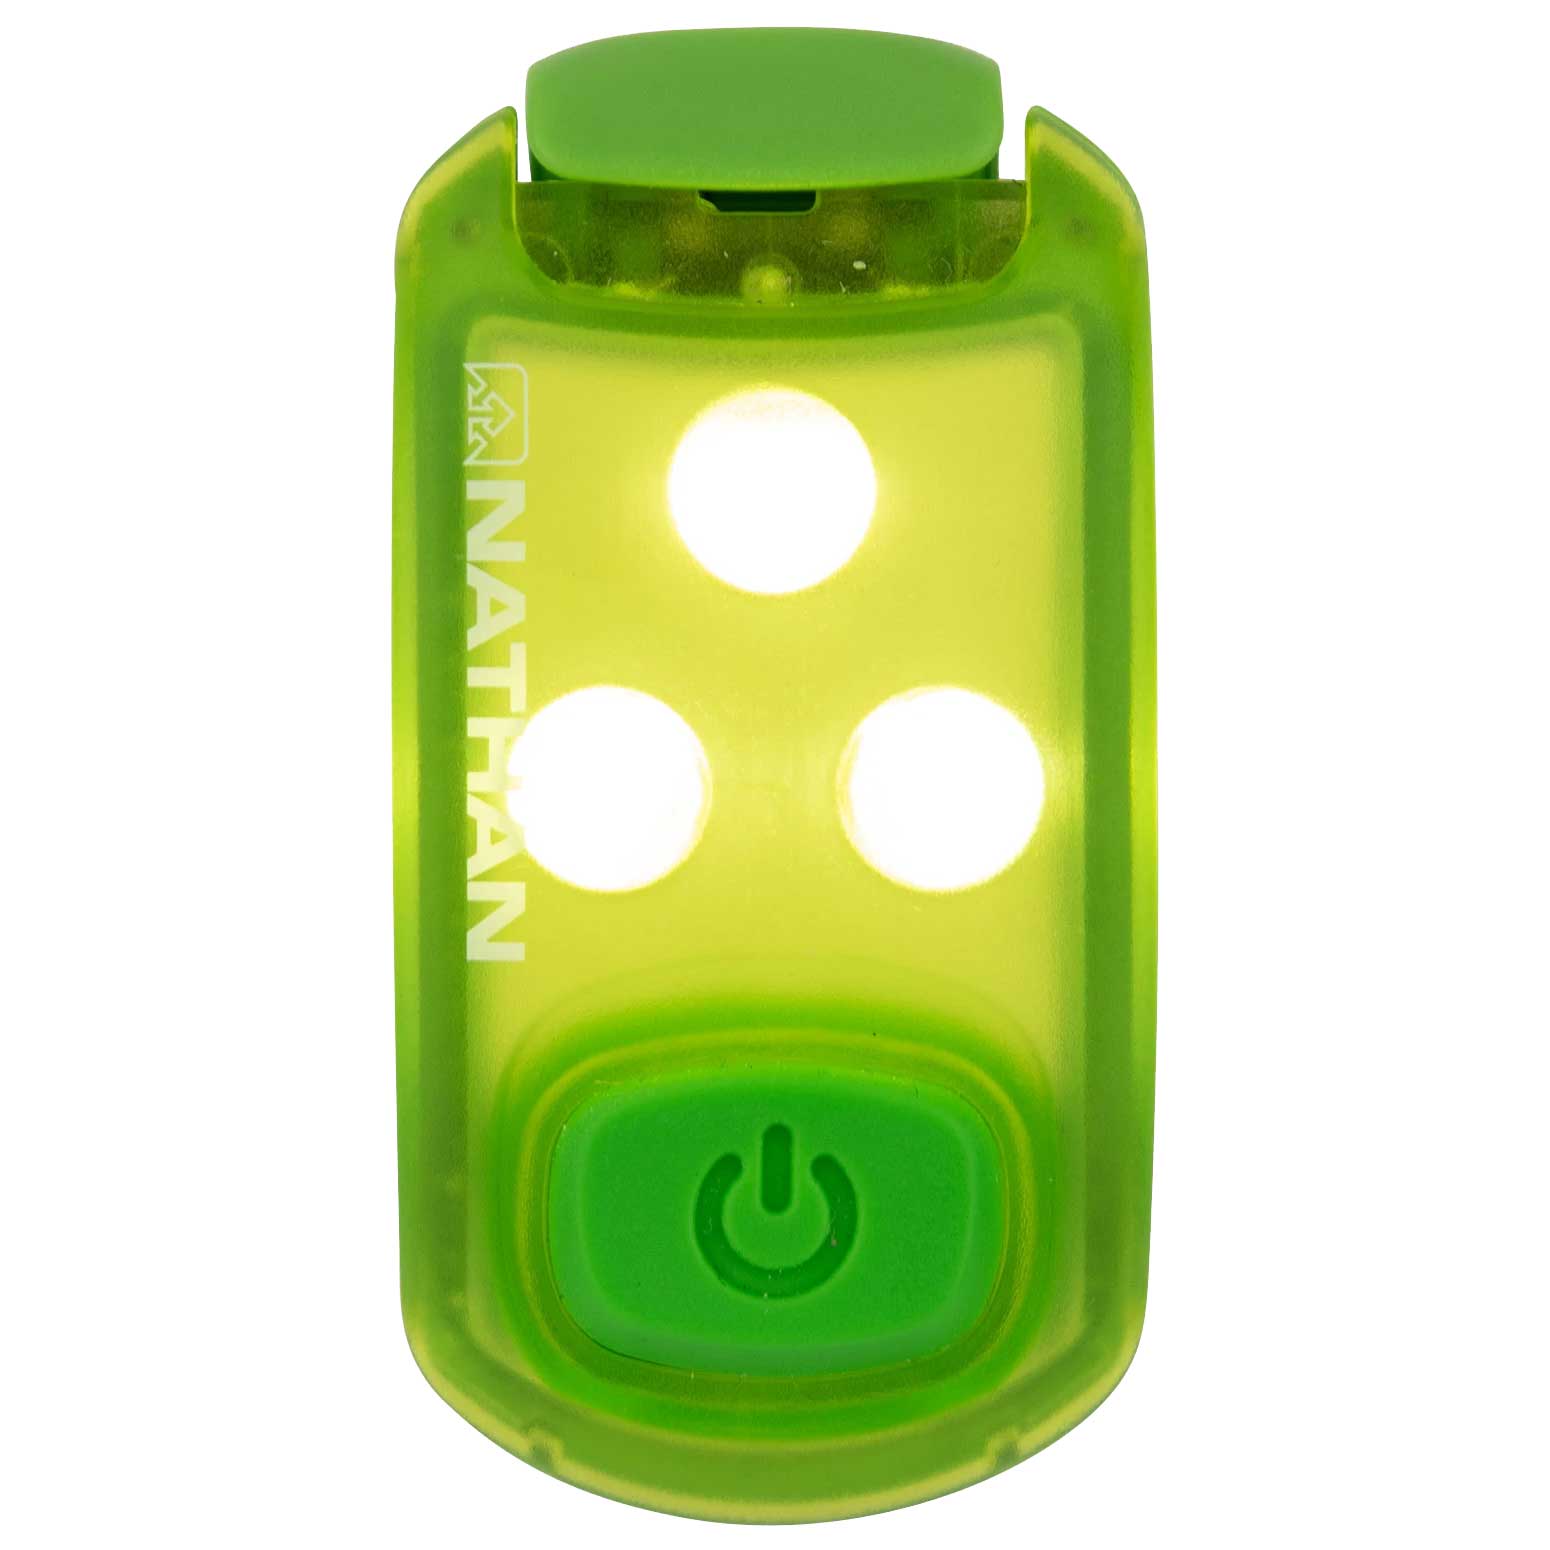 Produktbild von Nathan Sports StrobeLight LED Sicherheitslicht Clip - Lime Punch/Classic Green